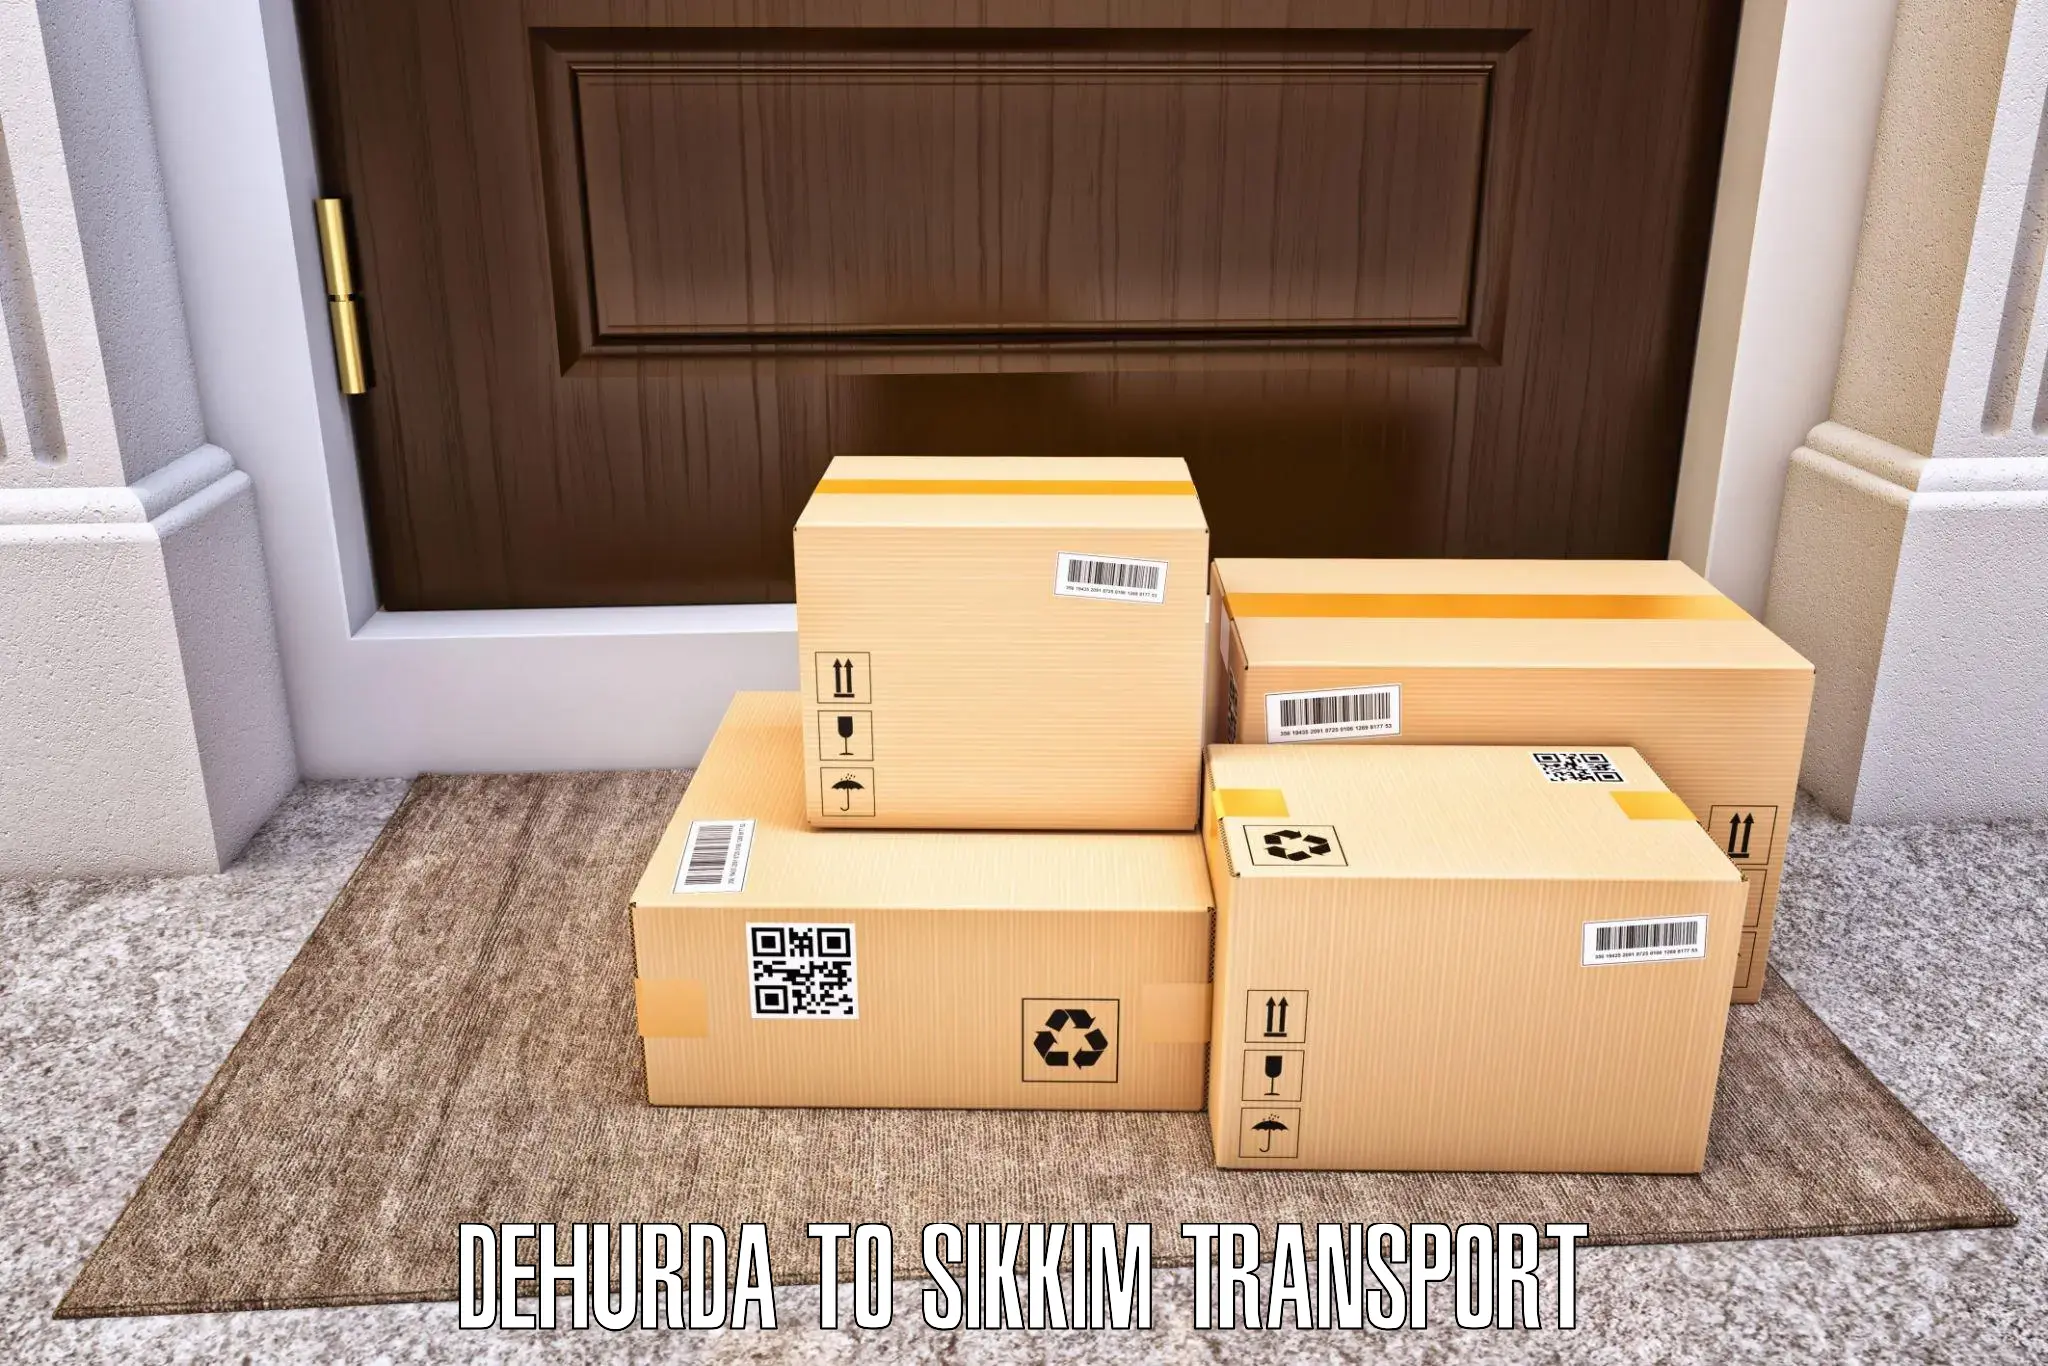 Online transport booking in Dehurda to South Sikkim